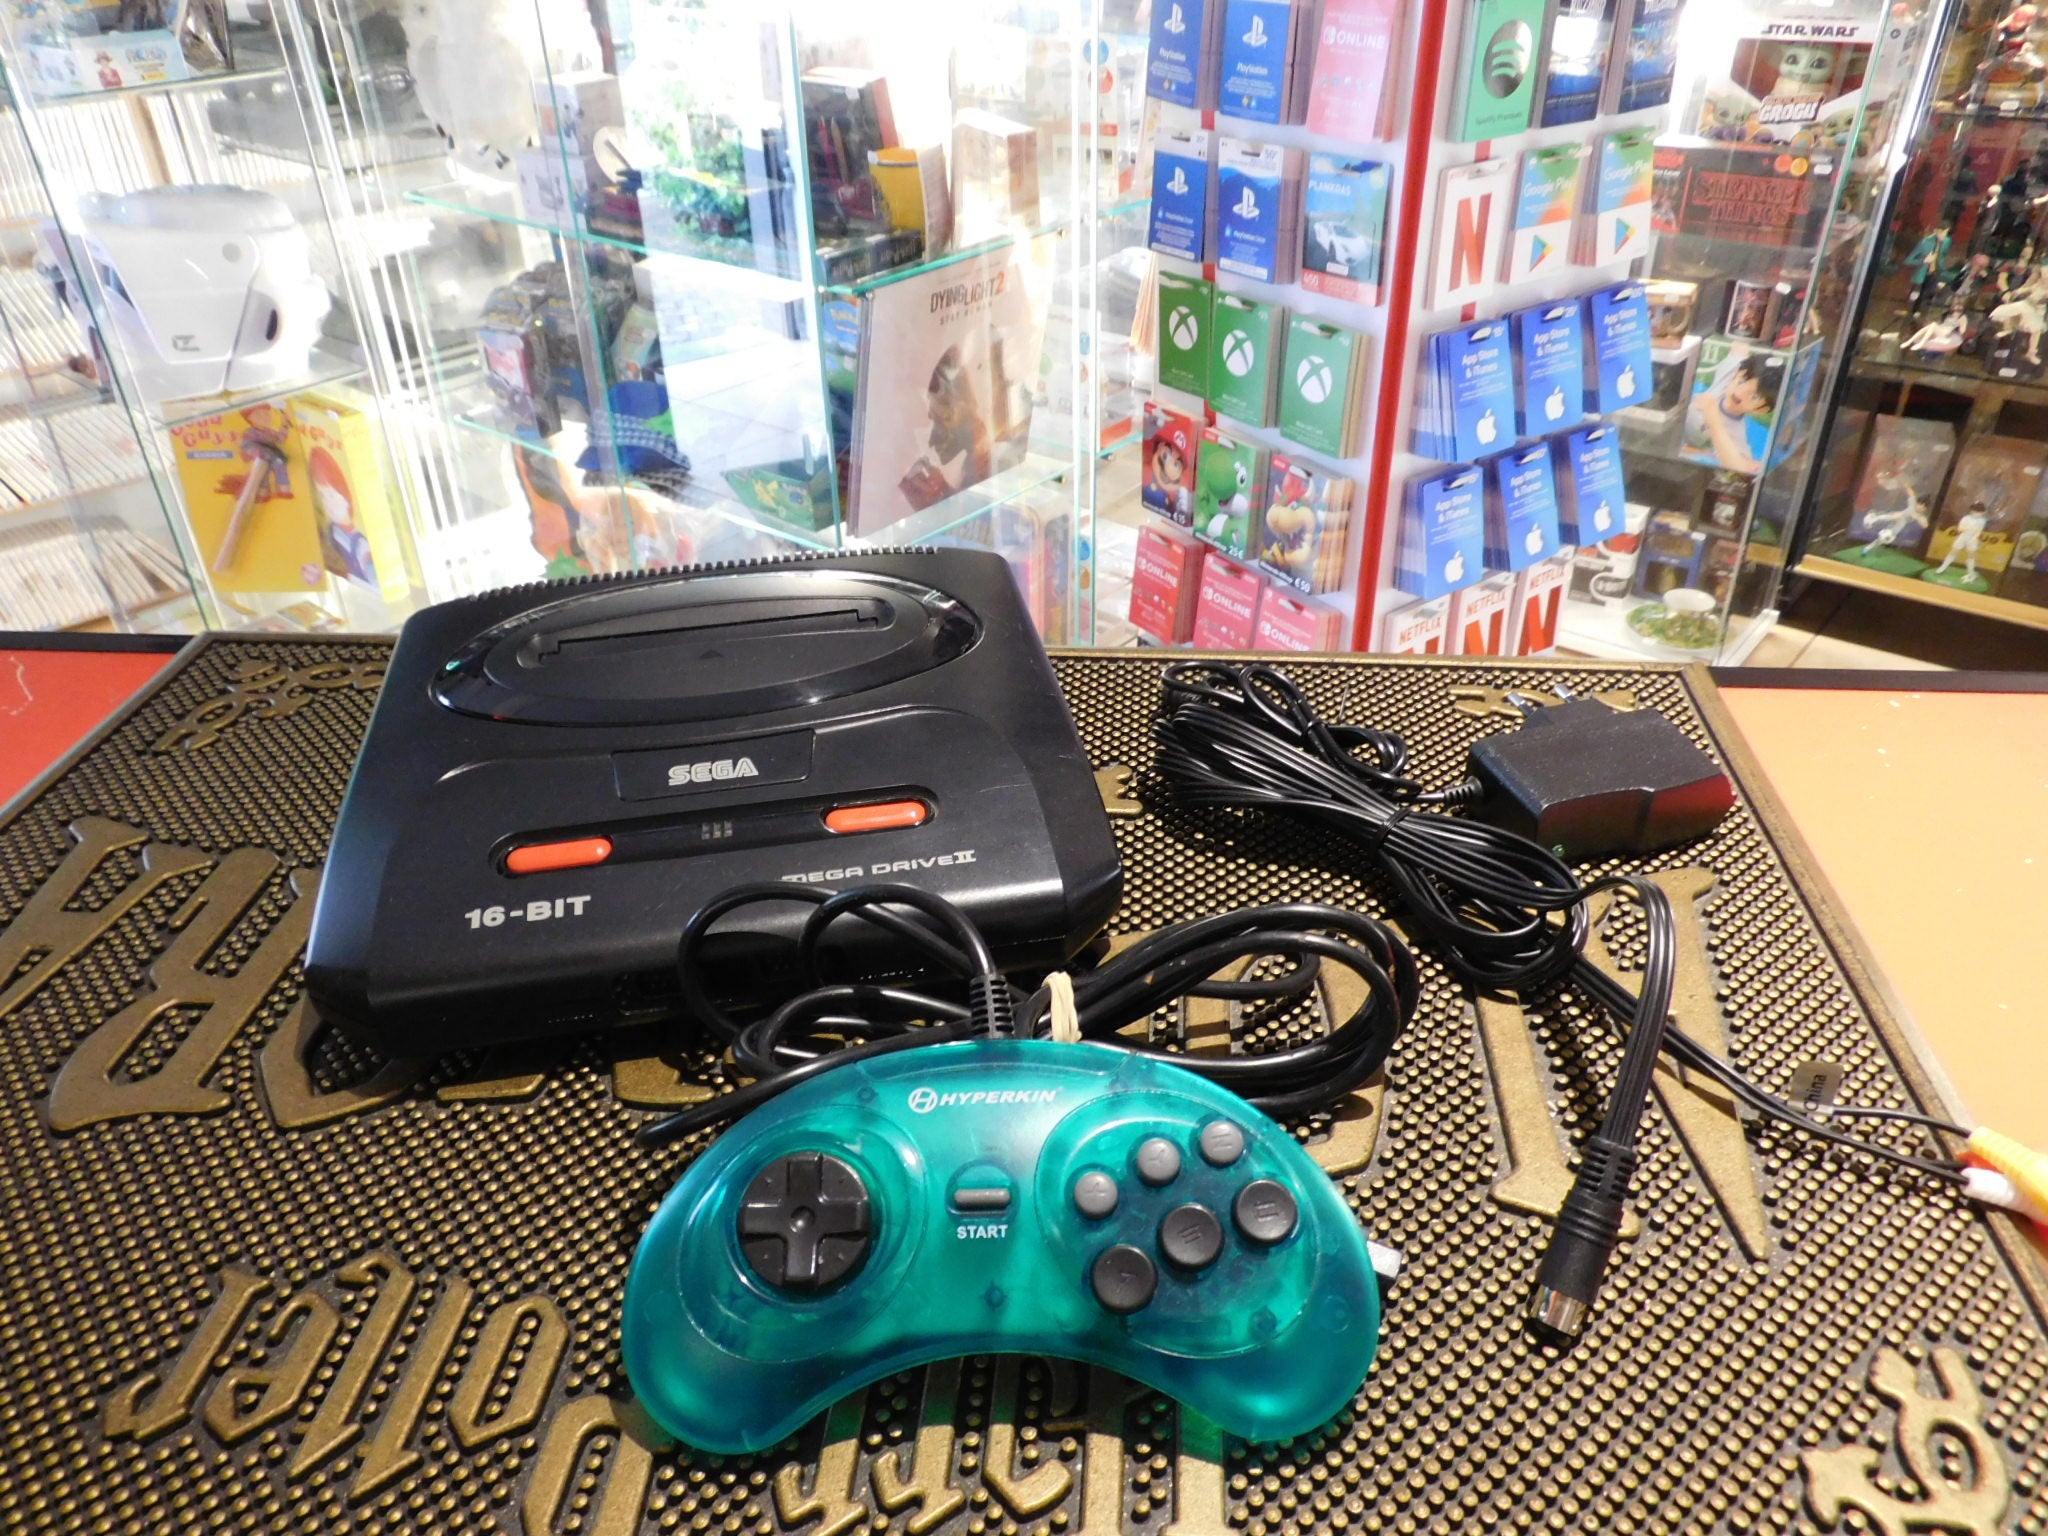 Sega Mega Drive II console